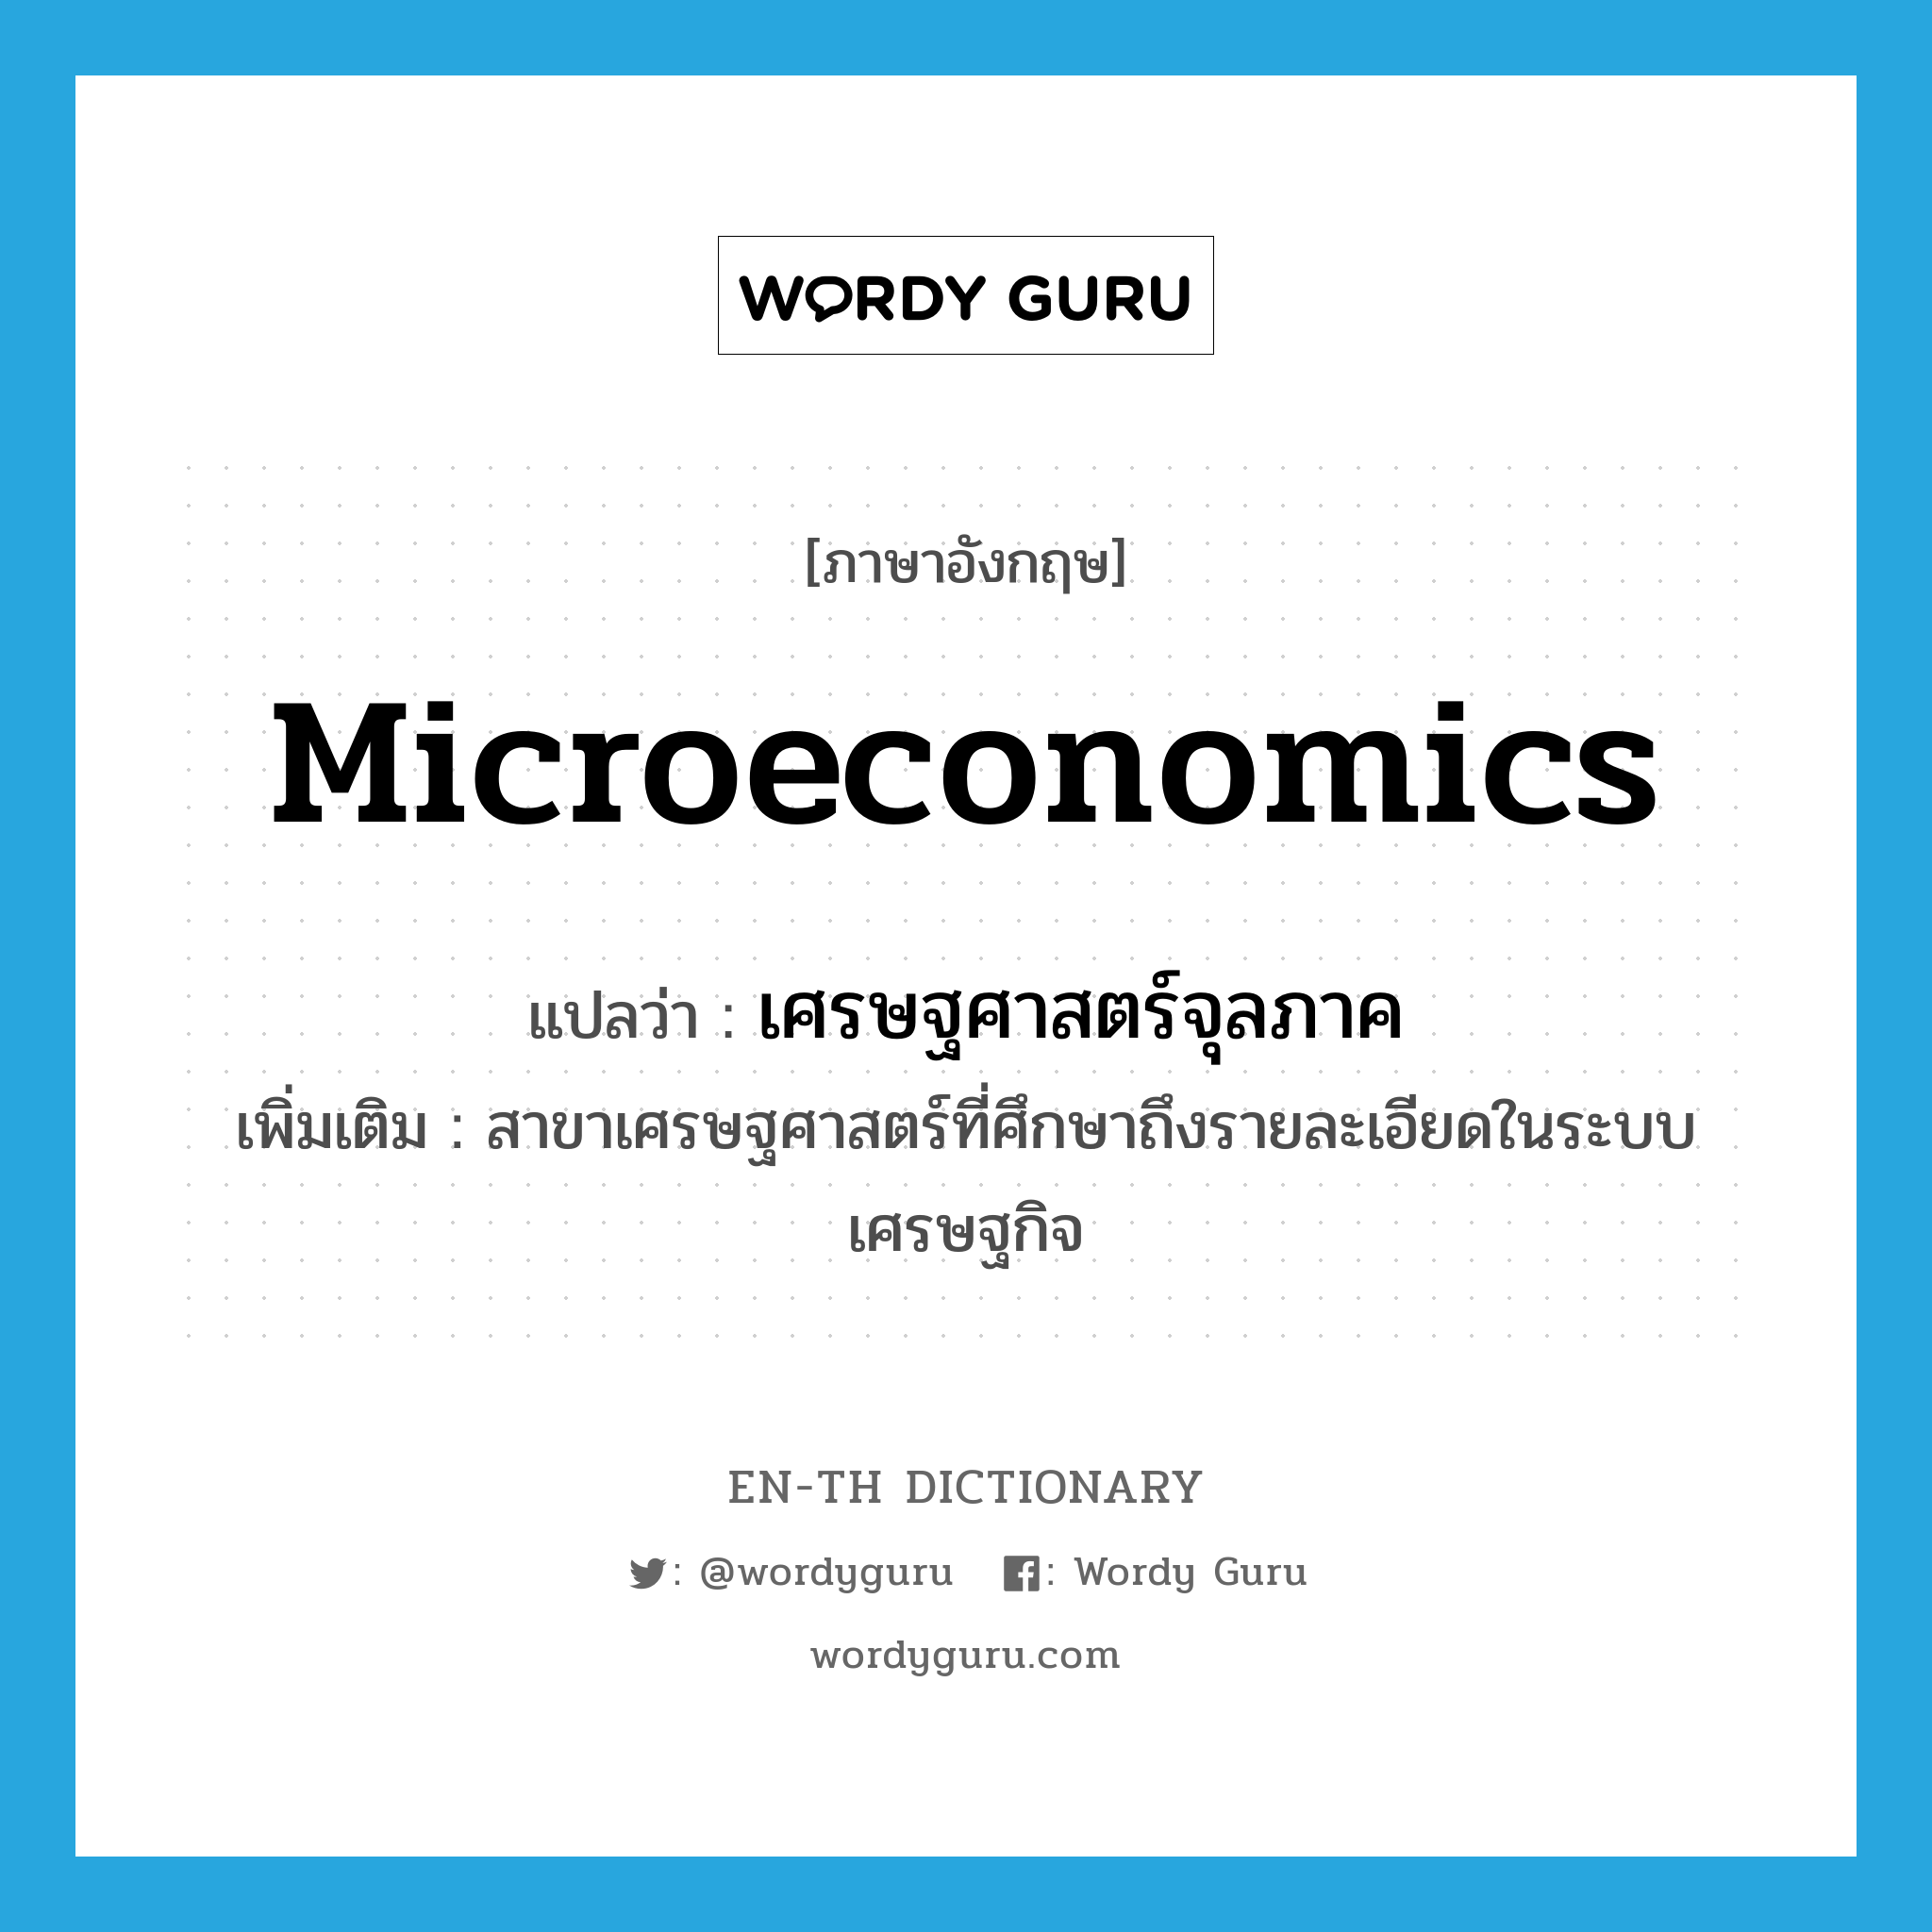 เศรษฐศาสตร์จุลภาค ภาษาอังกฤษ?, คำศัพท์ภาษาอังกฤษ เศรษฐศาสตร์จุลภาค แปลว่า microeconomics ประเภท N เพิ่มเติม สาขาเศรษฐศาสตร์ที่ศึกษาถึงรายละเอียดในระบบเศรษฐกิจ หมวด N